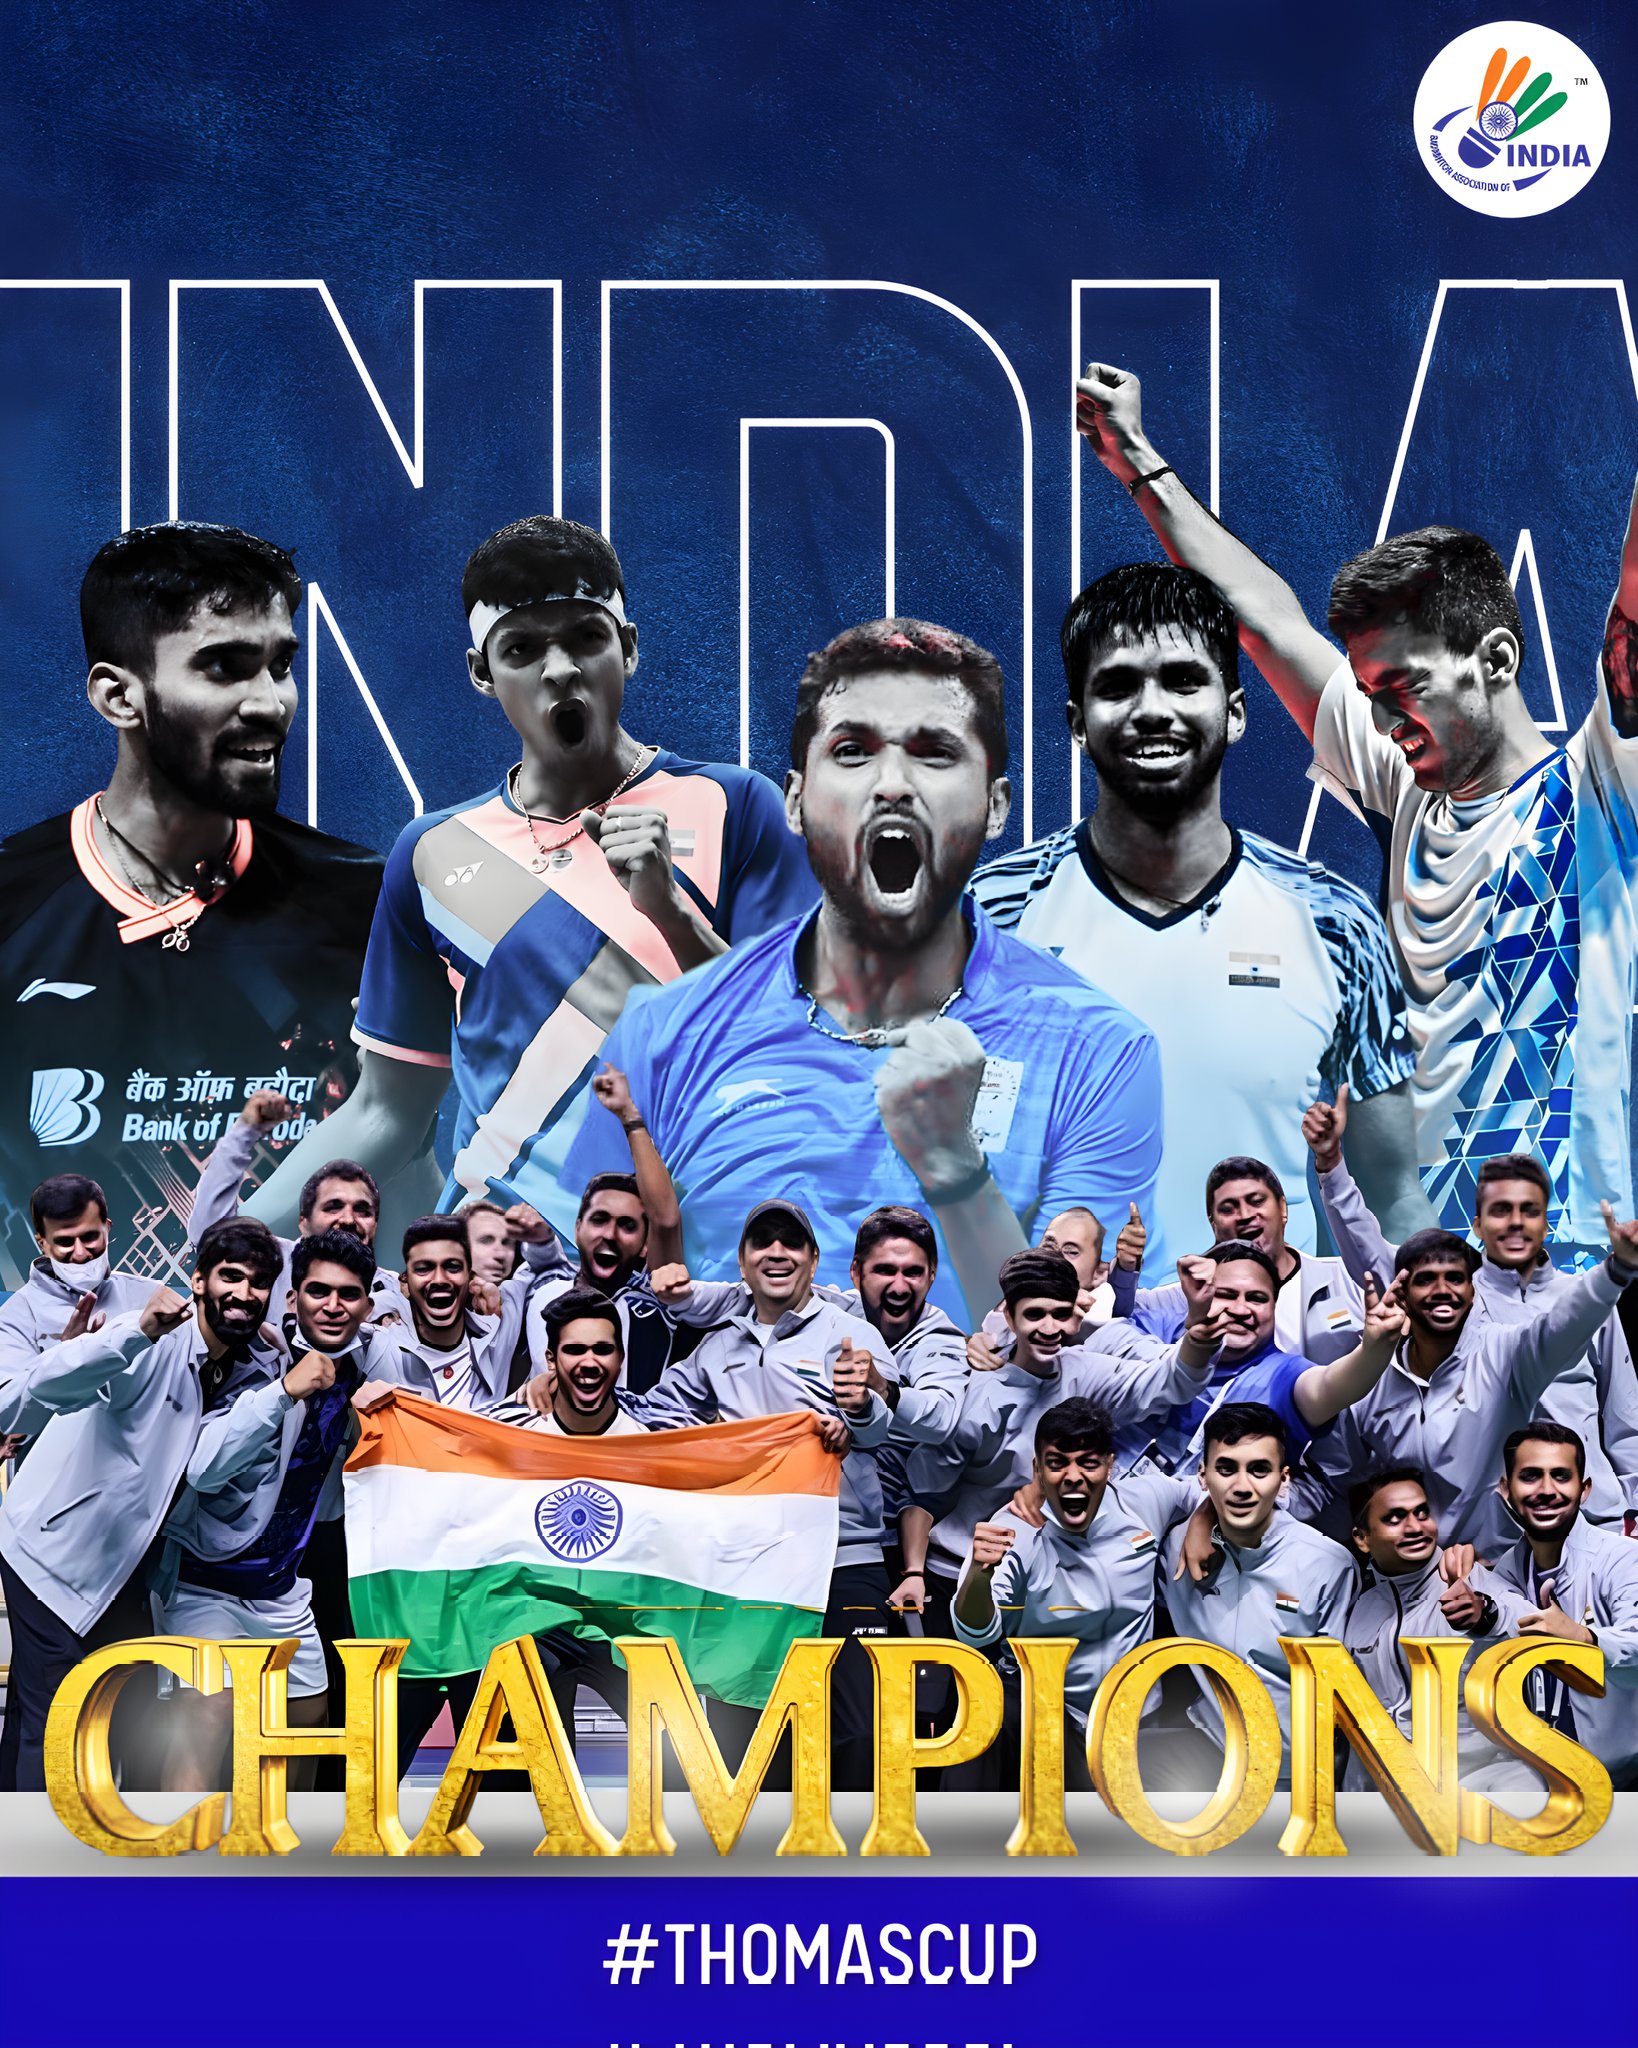 Thomas Cup : भारतीय पुरुष बैडमिंटन टीम ने रचा इतिहास, पहली बार जीता थॉमस कप, पीएम मोदी ने दी टीम को बधाई